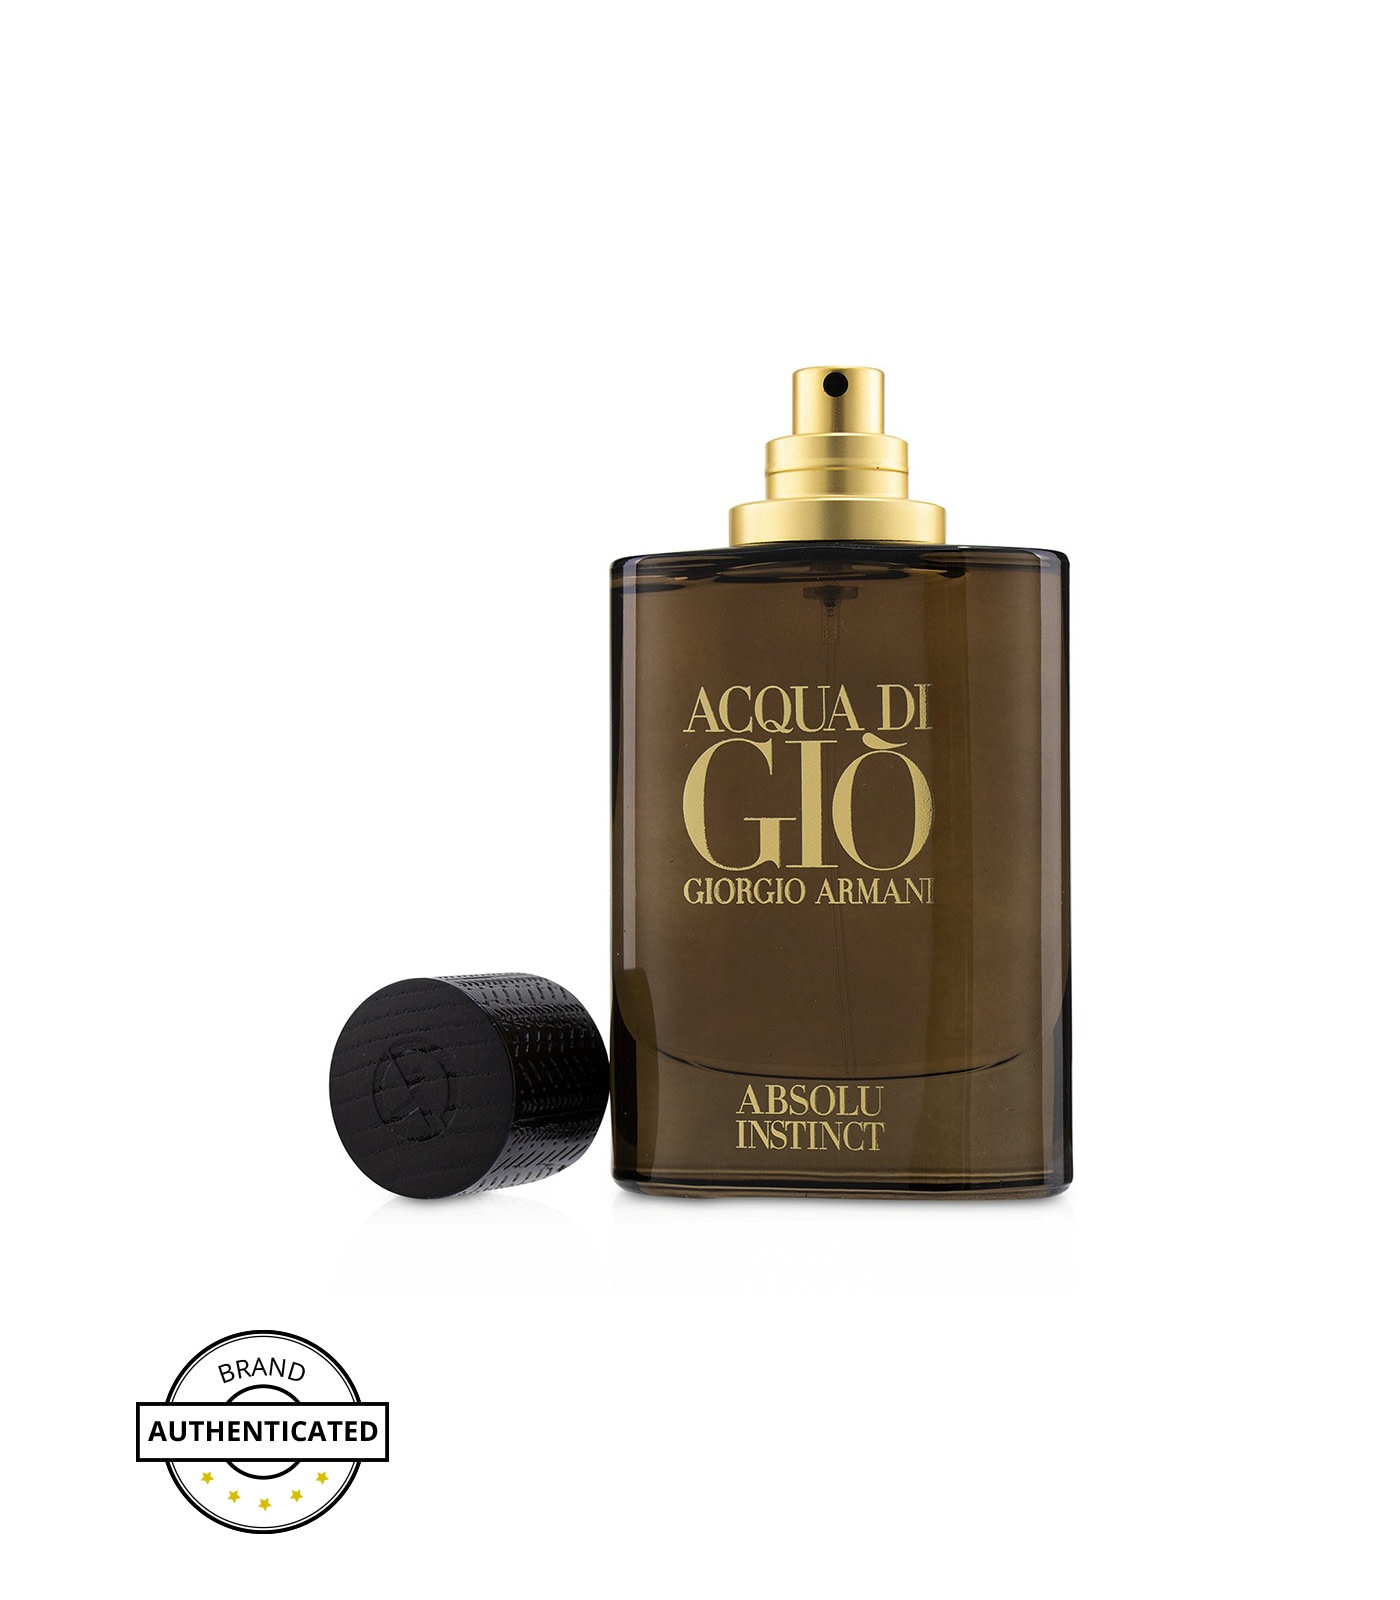 Giorgio Armani Acqua Di Gio Absolu Instinct Perfume For Men 75 Ml Edp Allure Essence